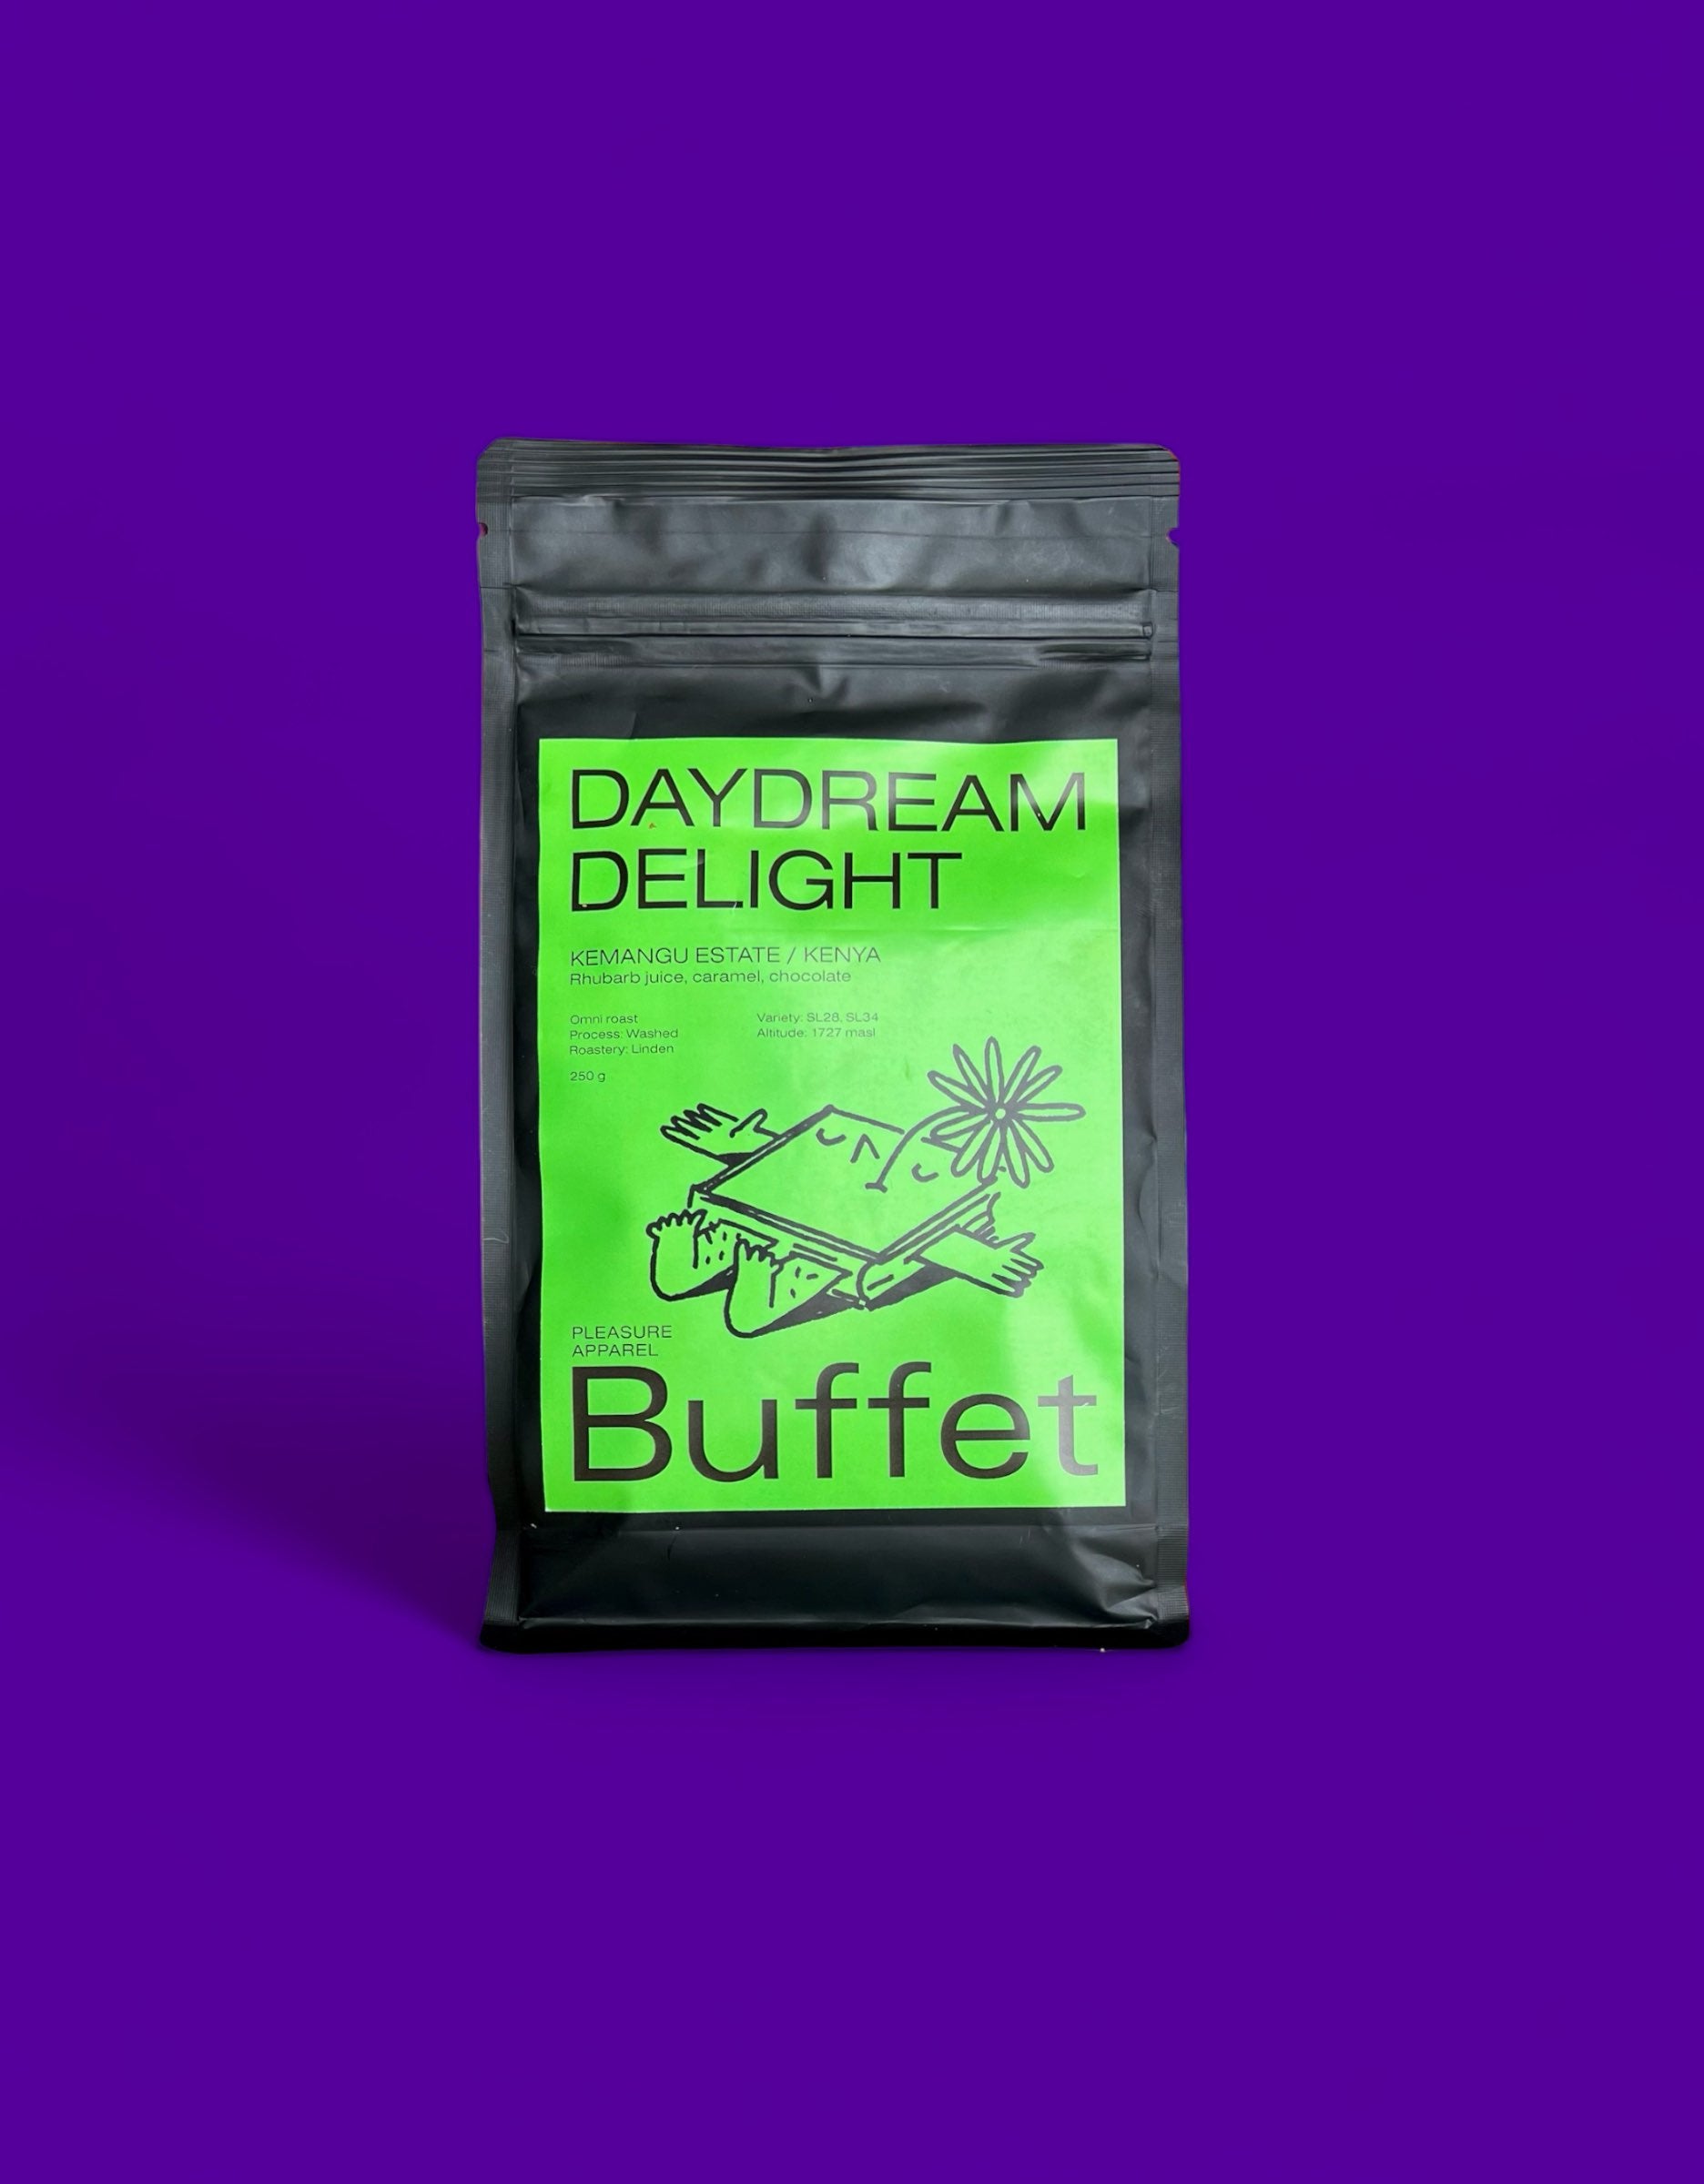 Daydream Delight coffee